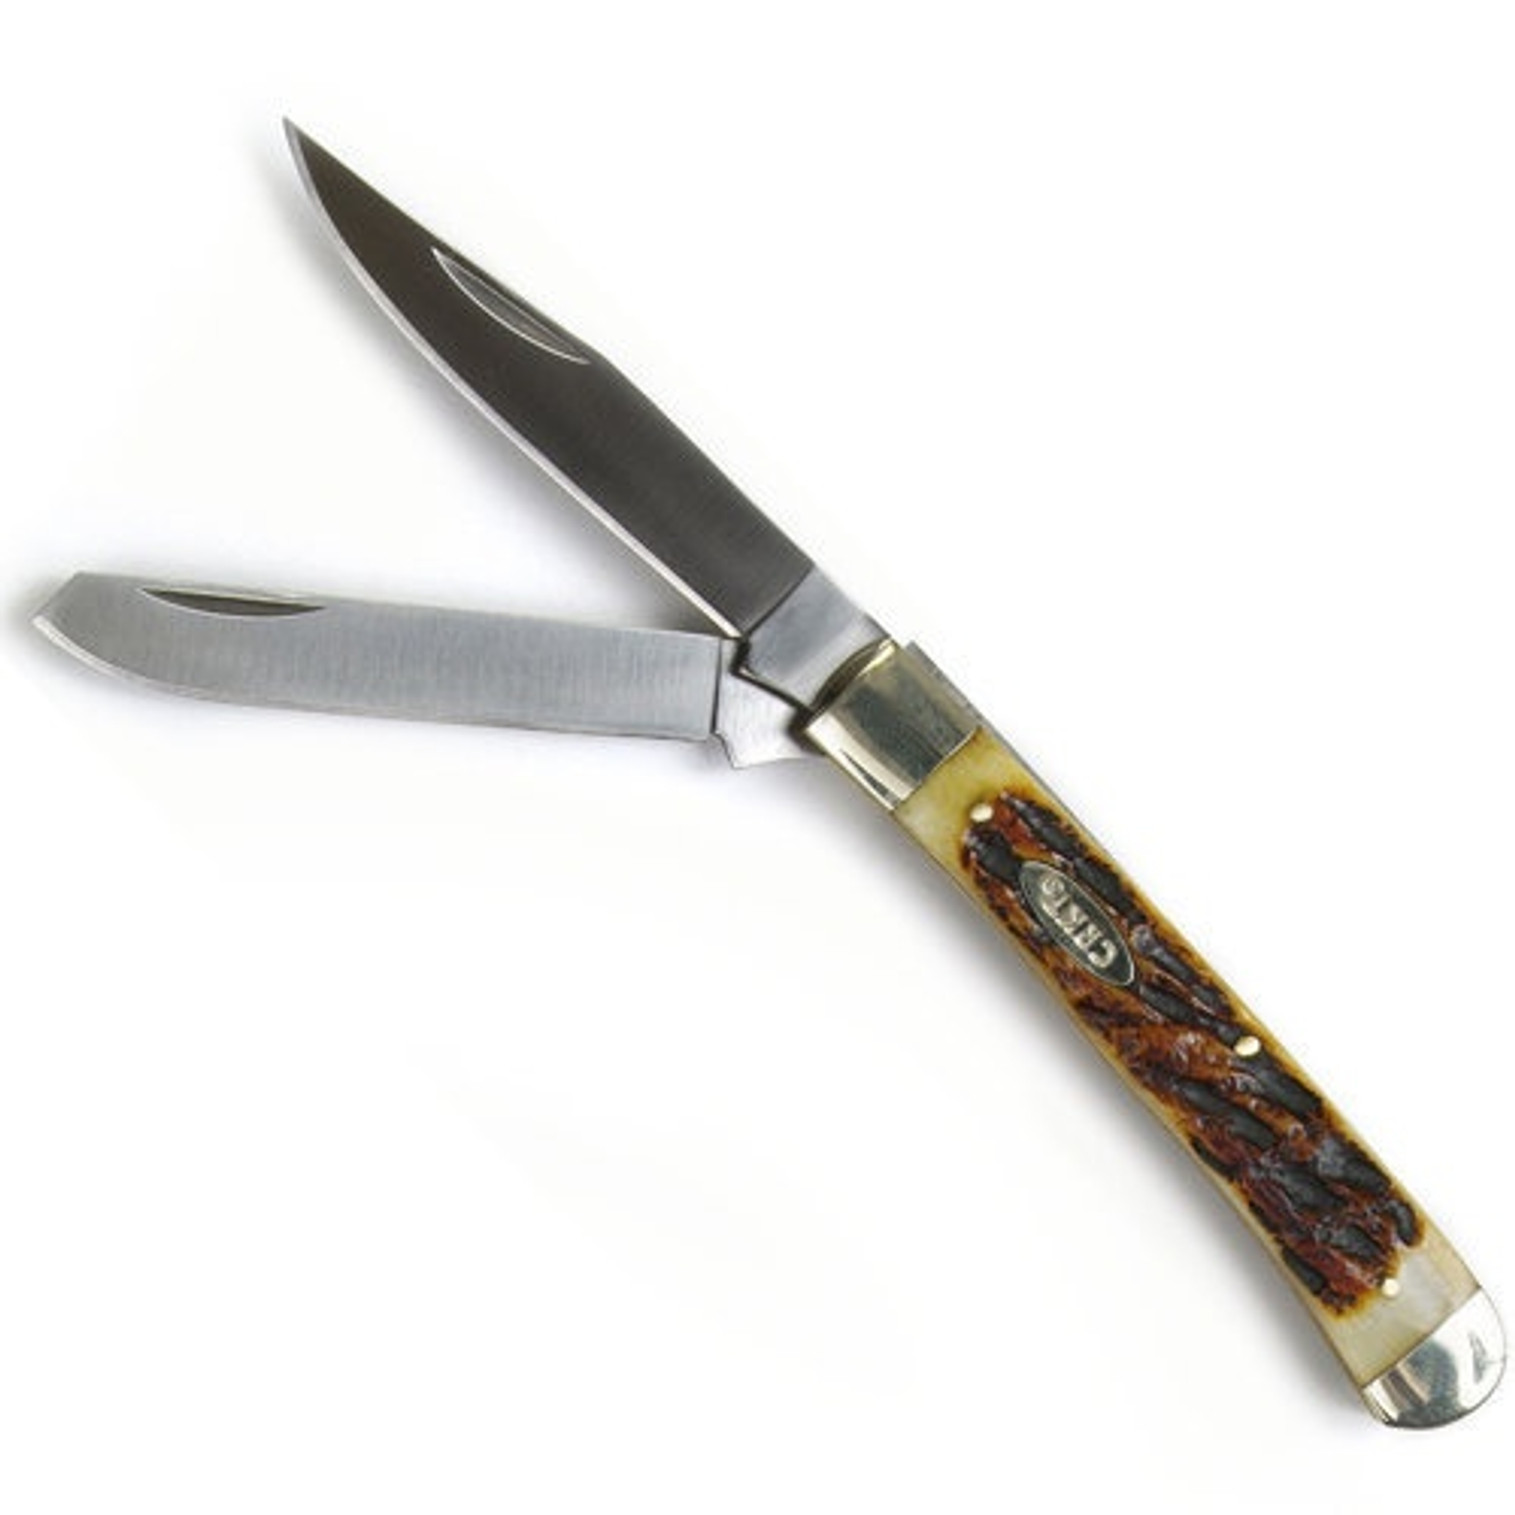 CRKT Trapper Pocket Folding Knife - 3.25"